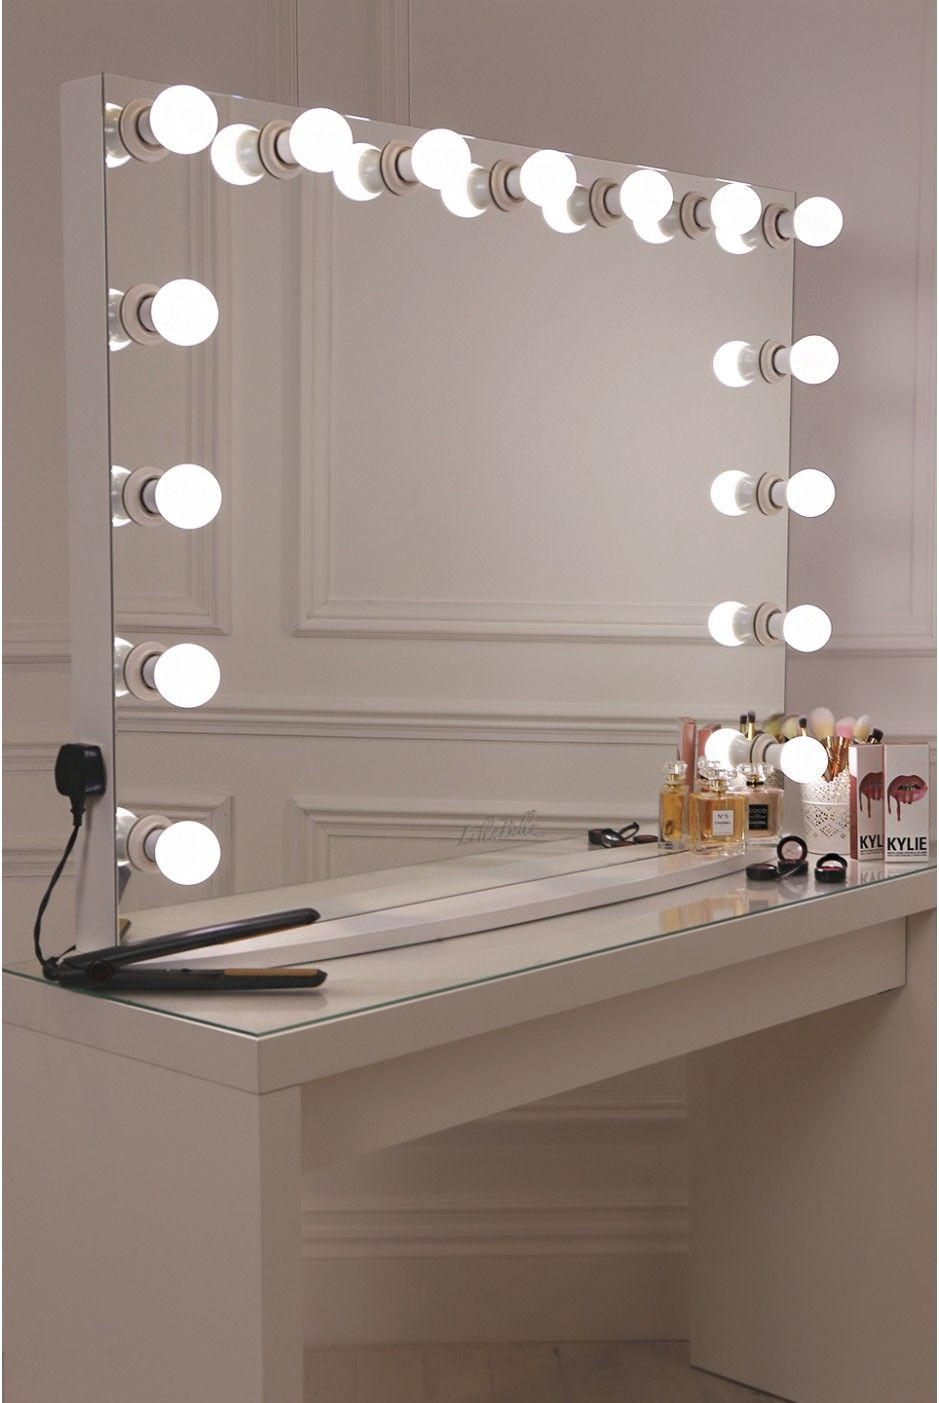 DIY Hollywood Mirror
 17 DIY Vanity Mirror Ideas to Make Your Room More